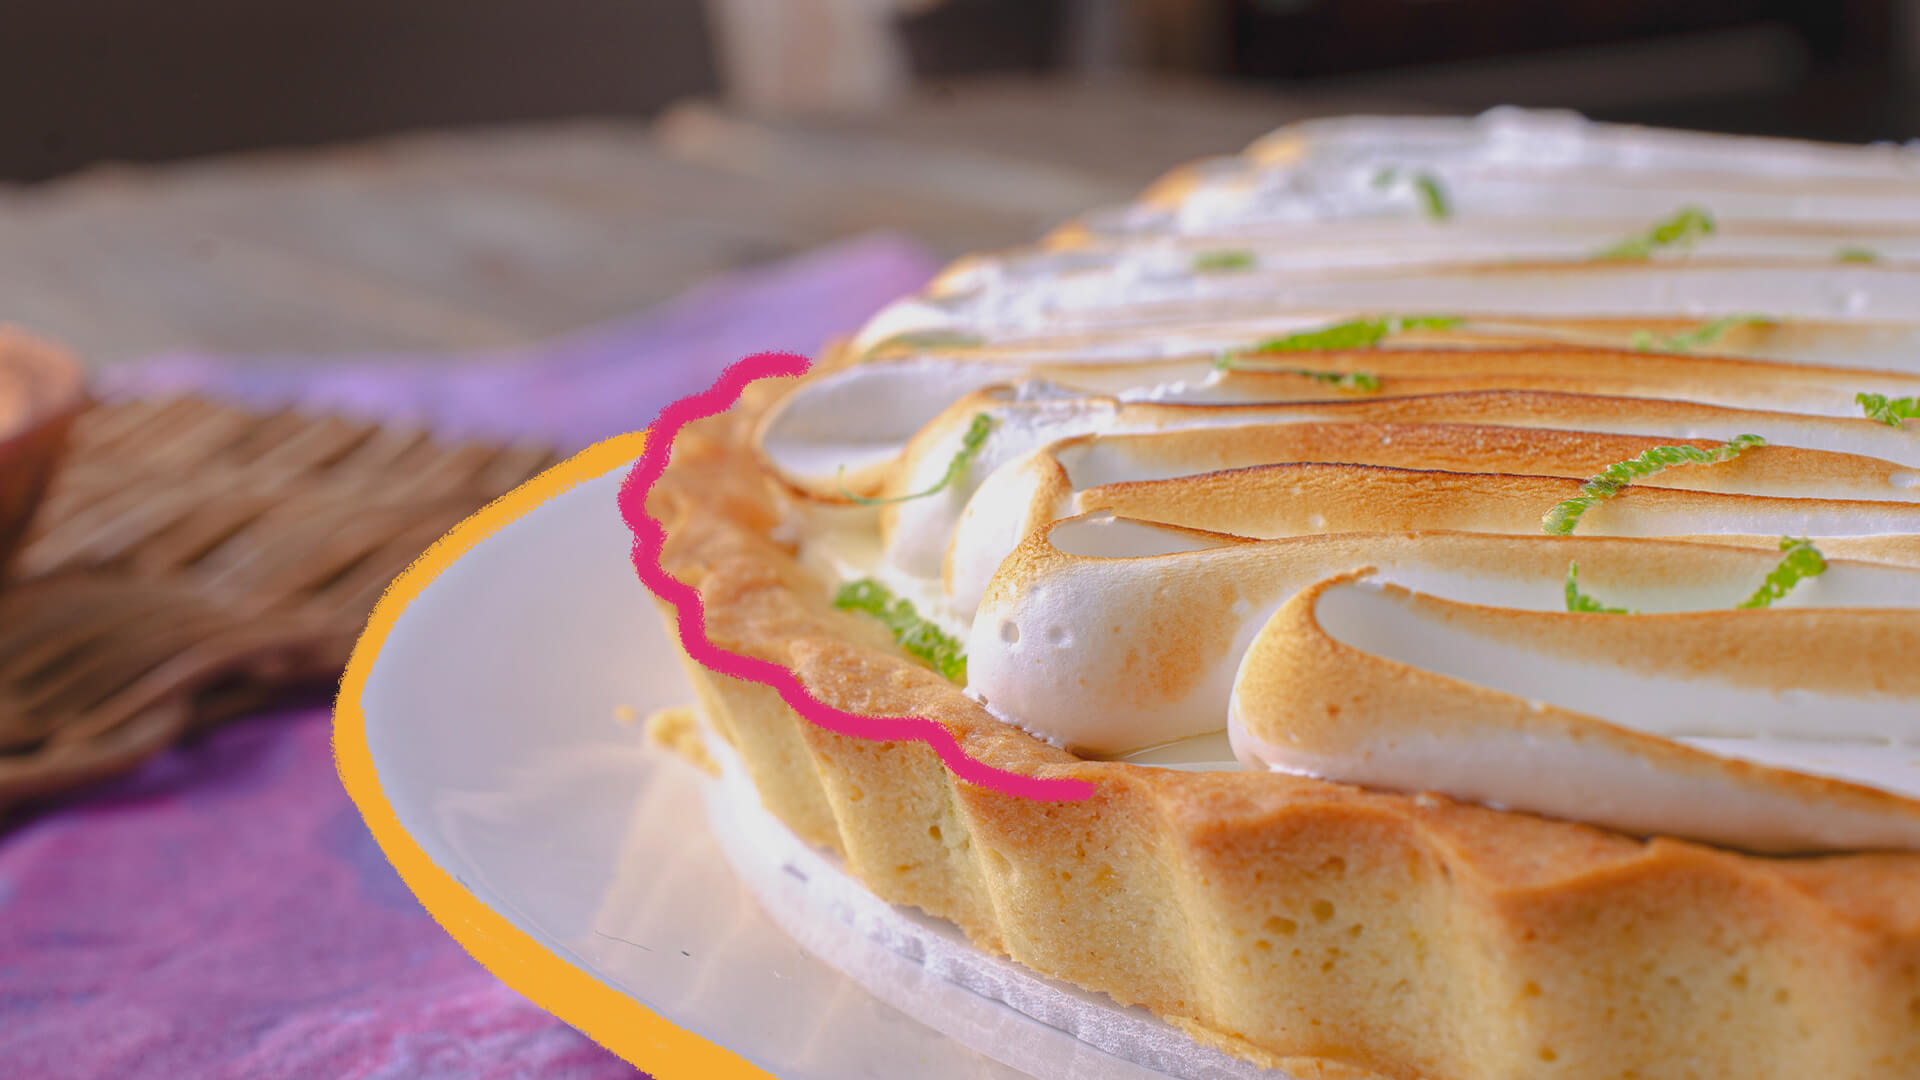 "Lanche da tarde: receita de torta de limão sem leite condensado": na foto, uma torta de limão. A imagem possui intervenções de rabiscos coloridos.